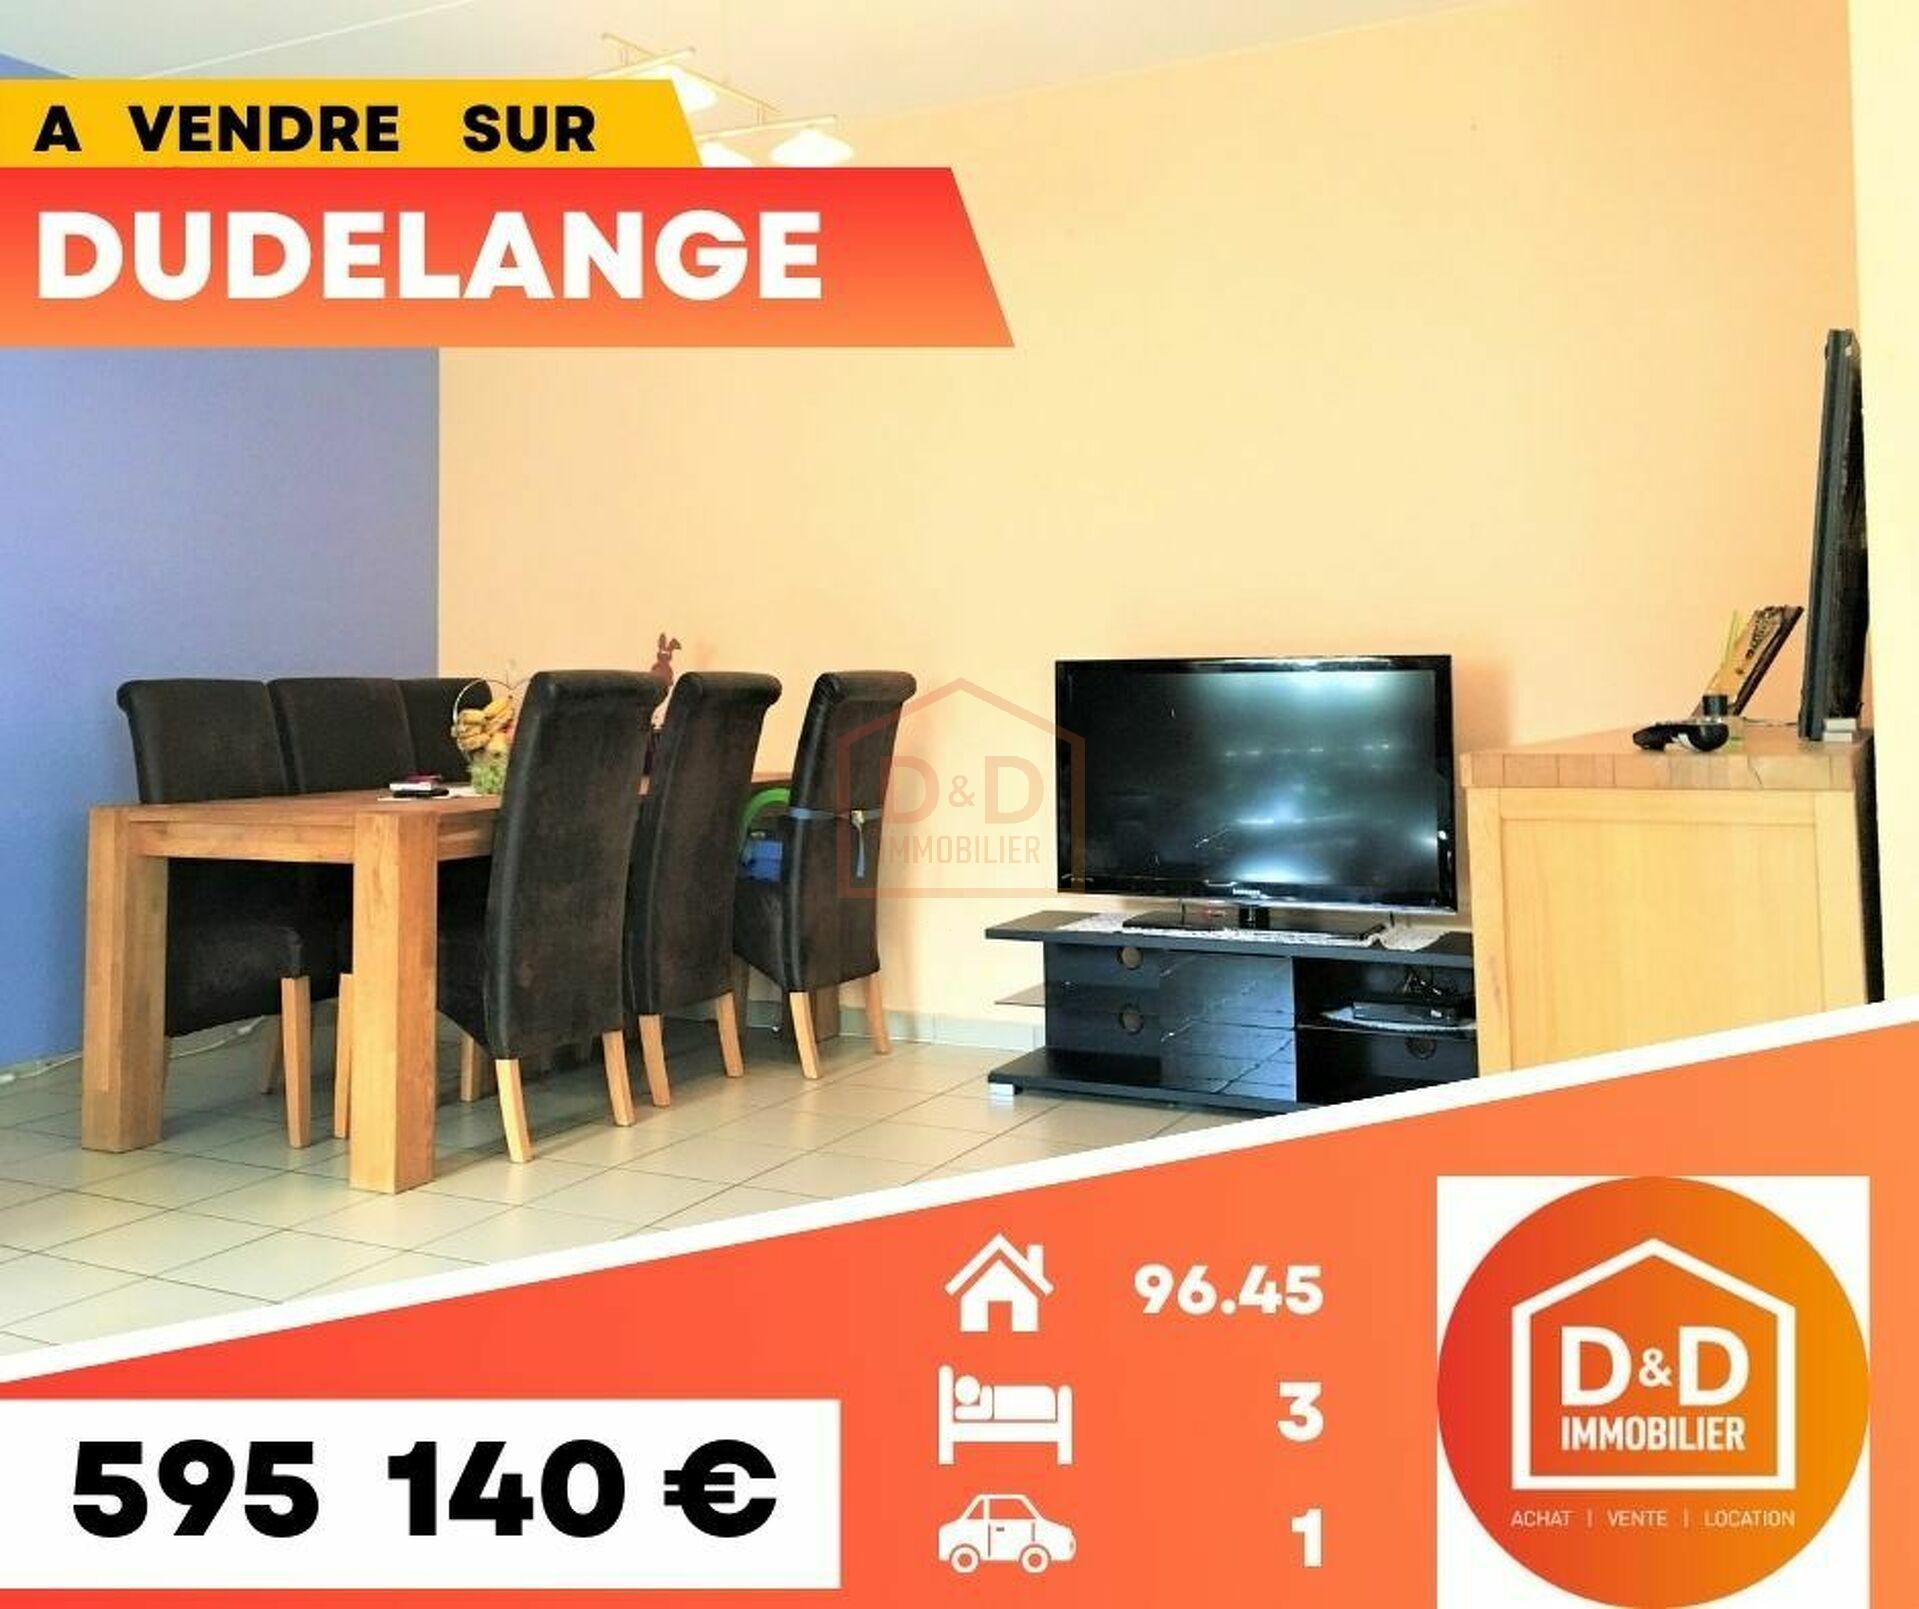 Appartement à Dudelange, 96,45 m², 3 chambres, 1 salle de bain, 595 140 €